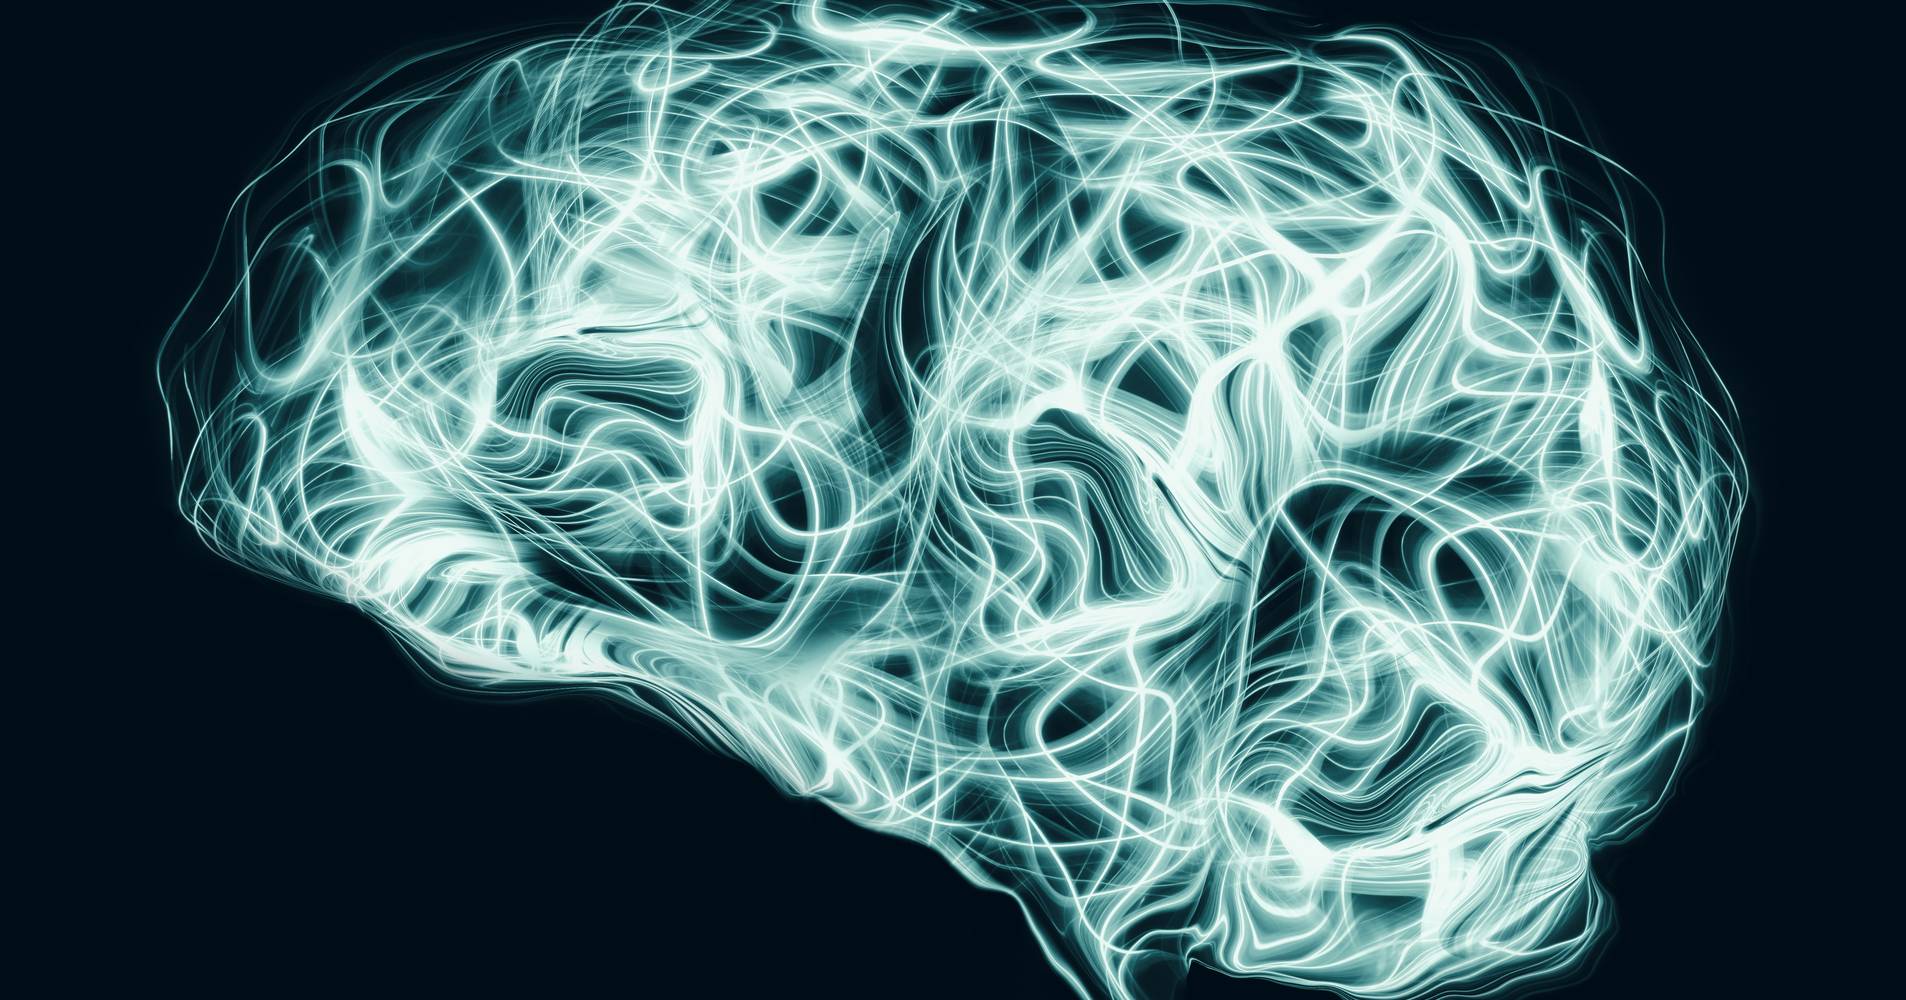 Herramienta de inteligencia artificial detecta la enfermedad de Alzheimer incluso sin síntomas